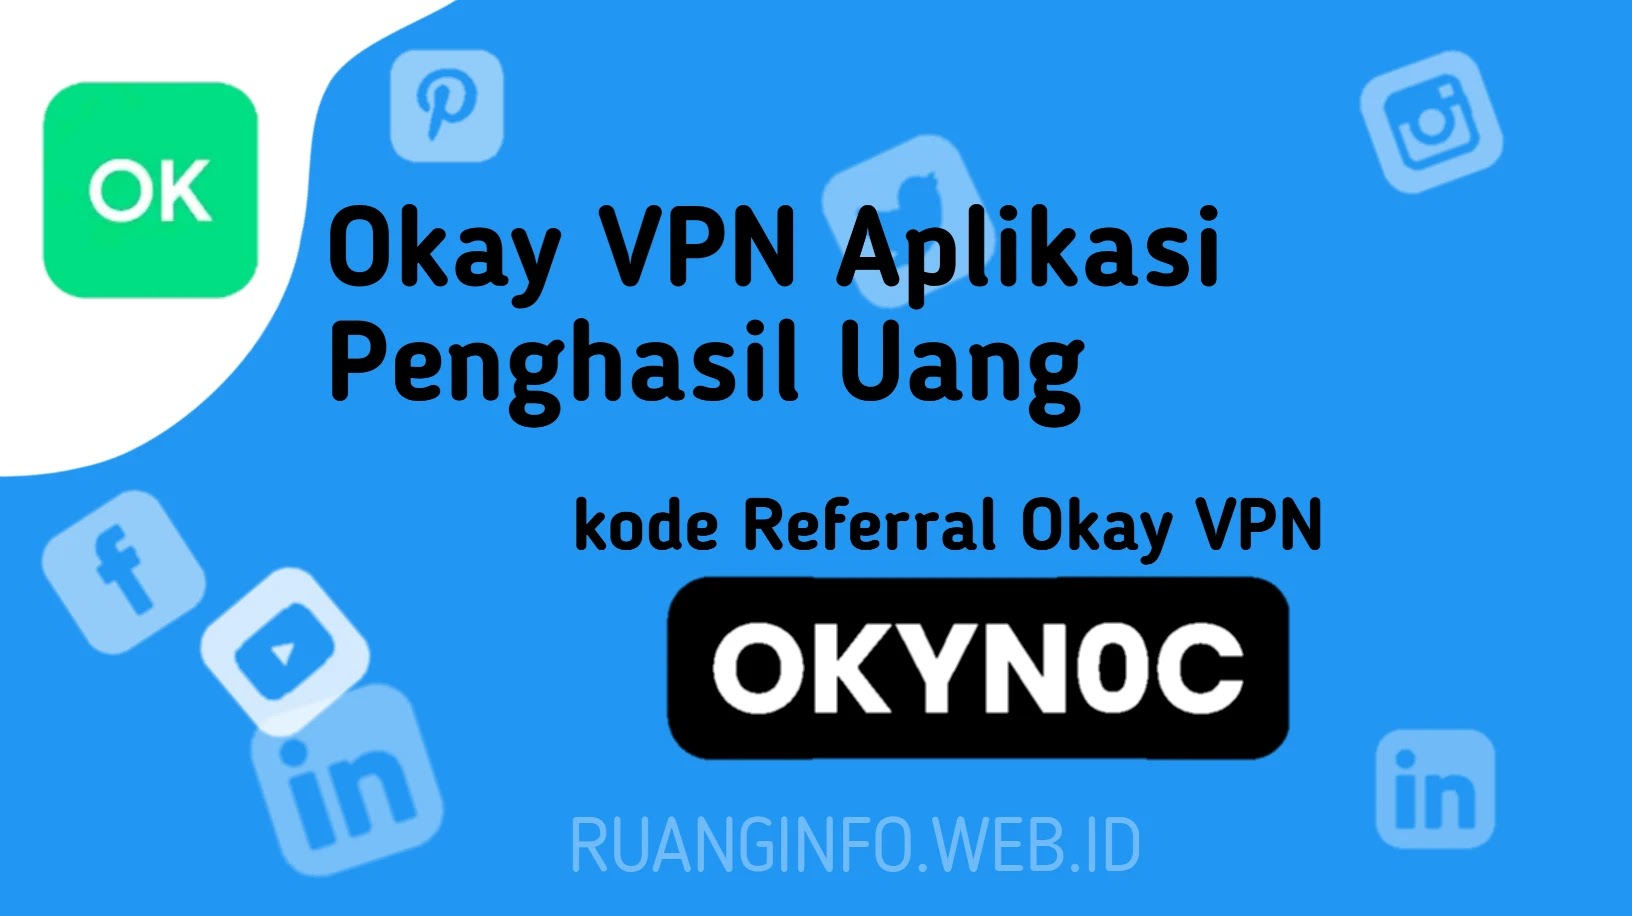 kode Referral Okay VPN Aplikasi Penghasil Uang Terbaru 2022